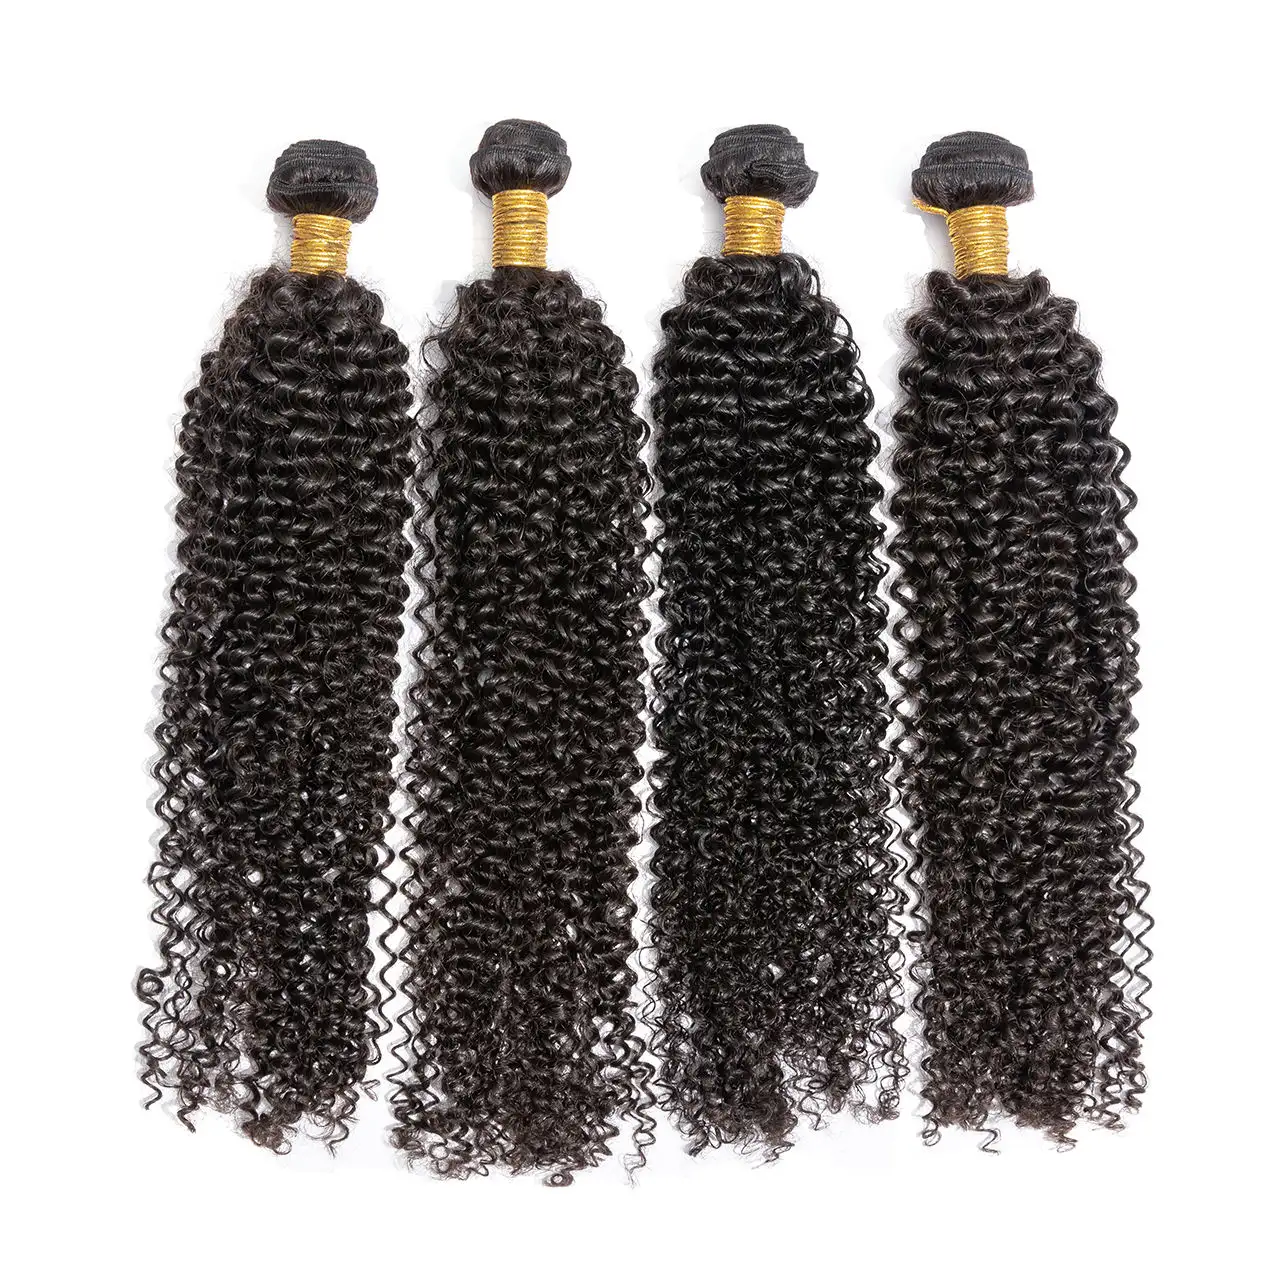 100% 레미 말레이시아 곱슬 머리 묶음 자연 색상 두꺼운 끝 머리 확장꼬인 곱슬 머리 인모 번들